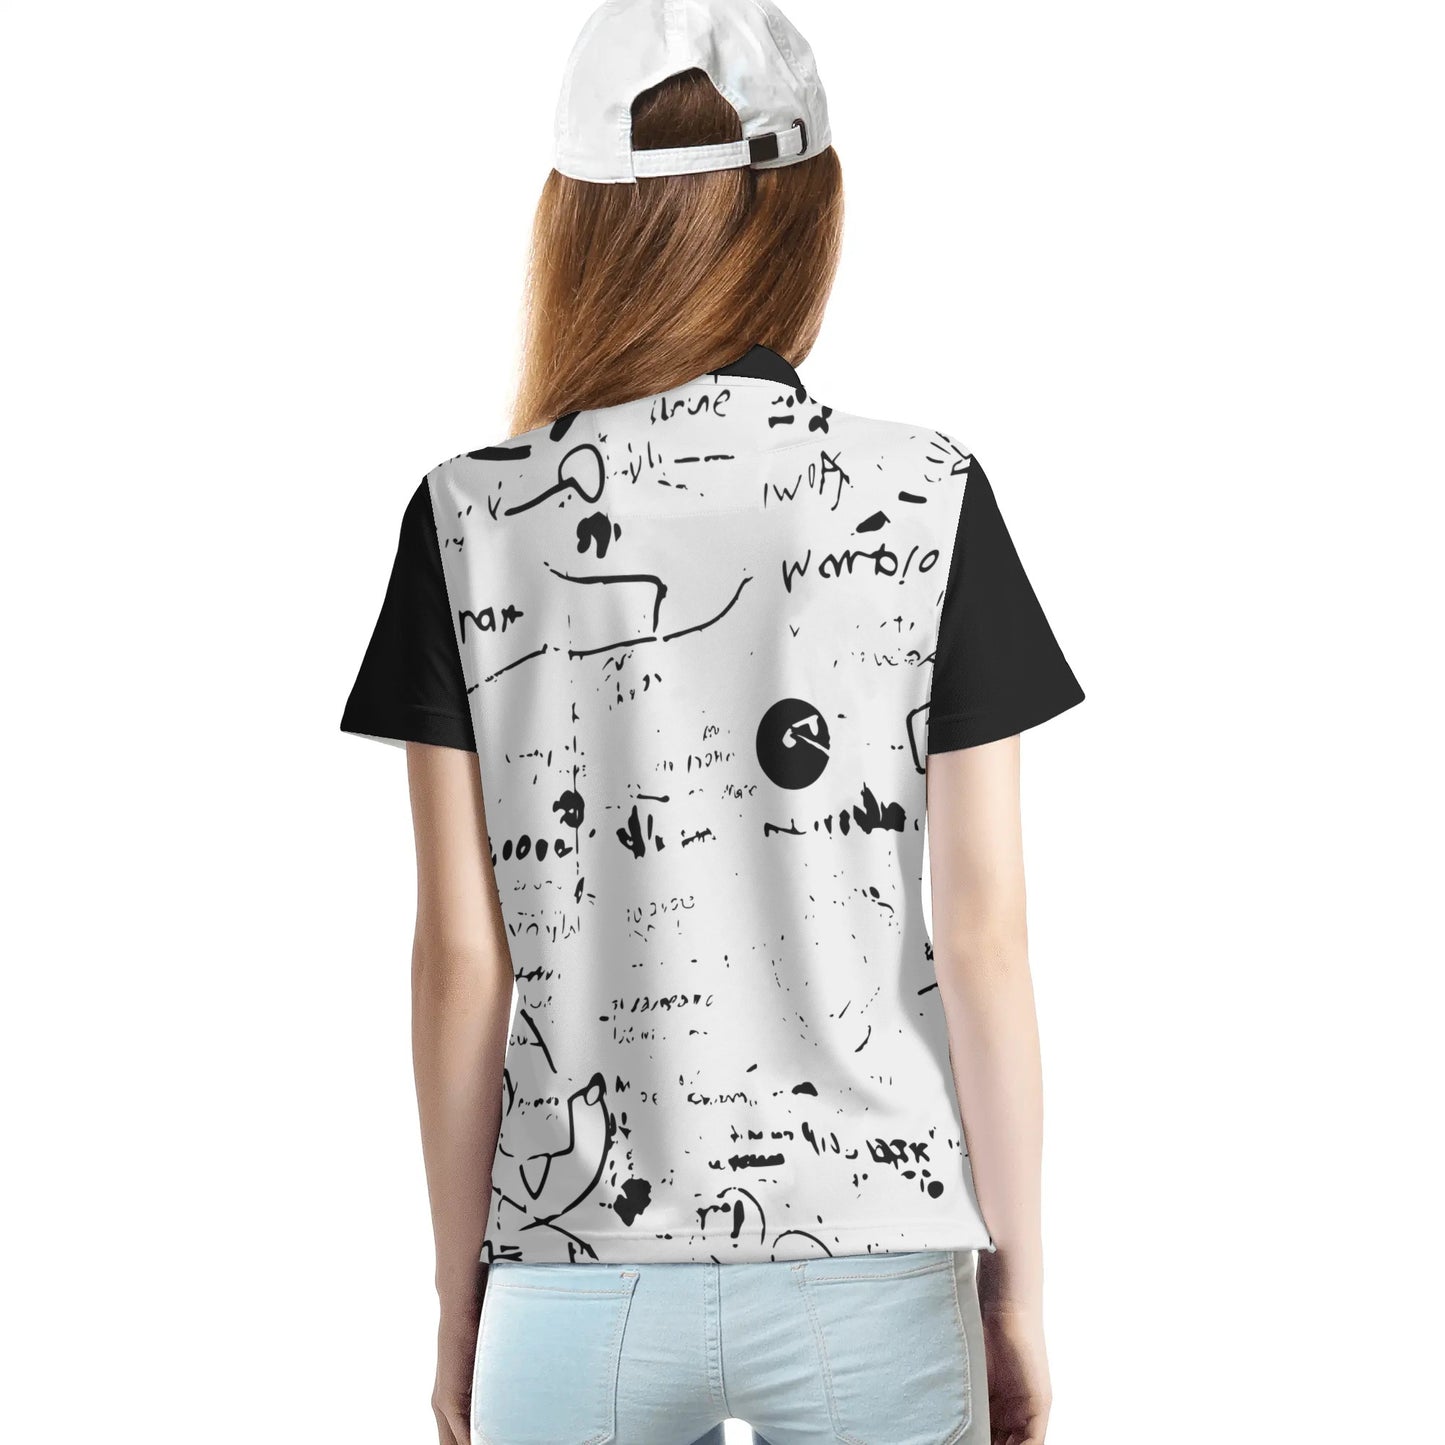 Women's DuGamii "Word Art" Top Button Shirt